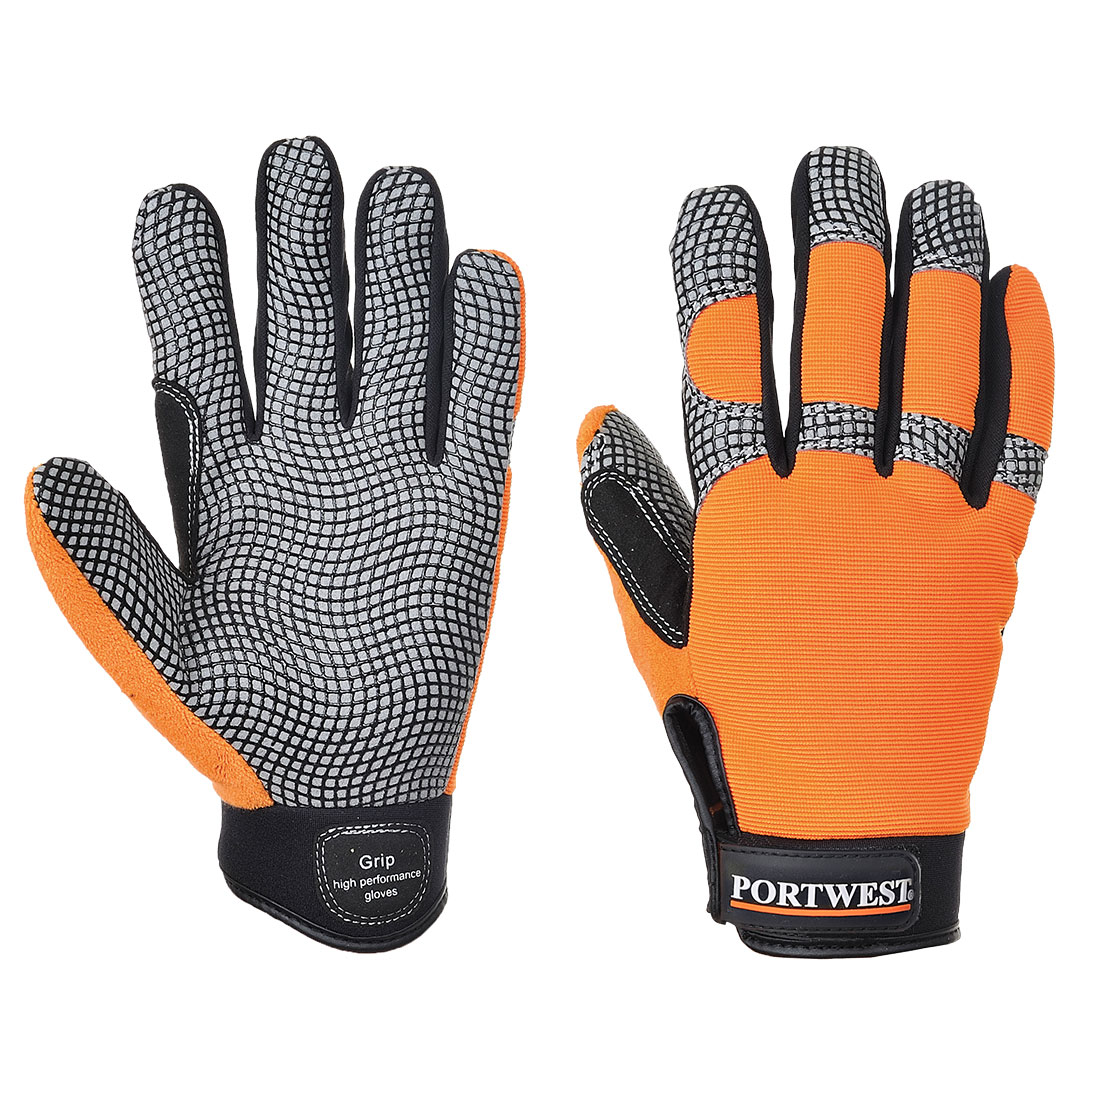 Comfort Grip - High Performance Glove A735